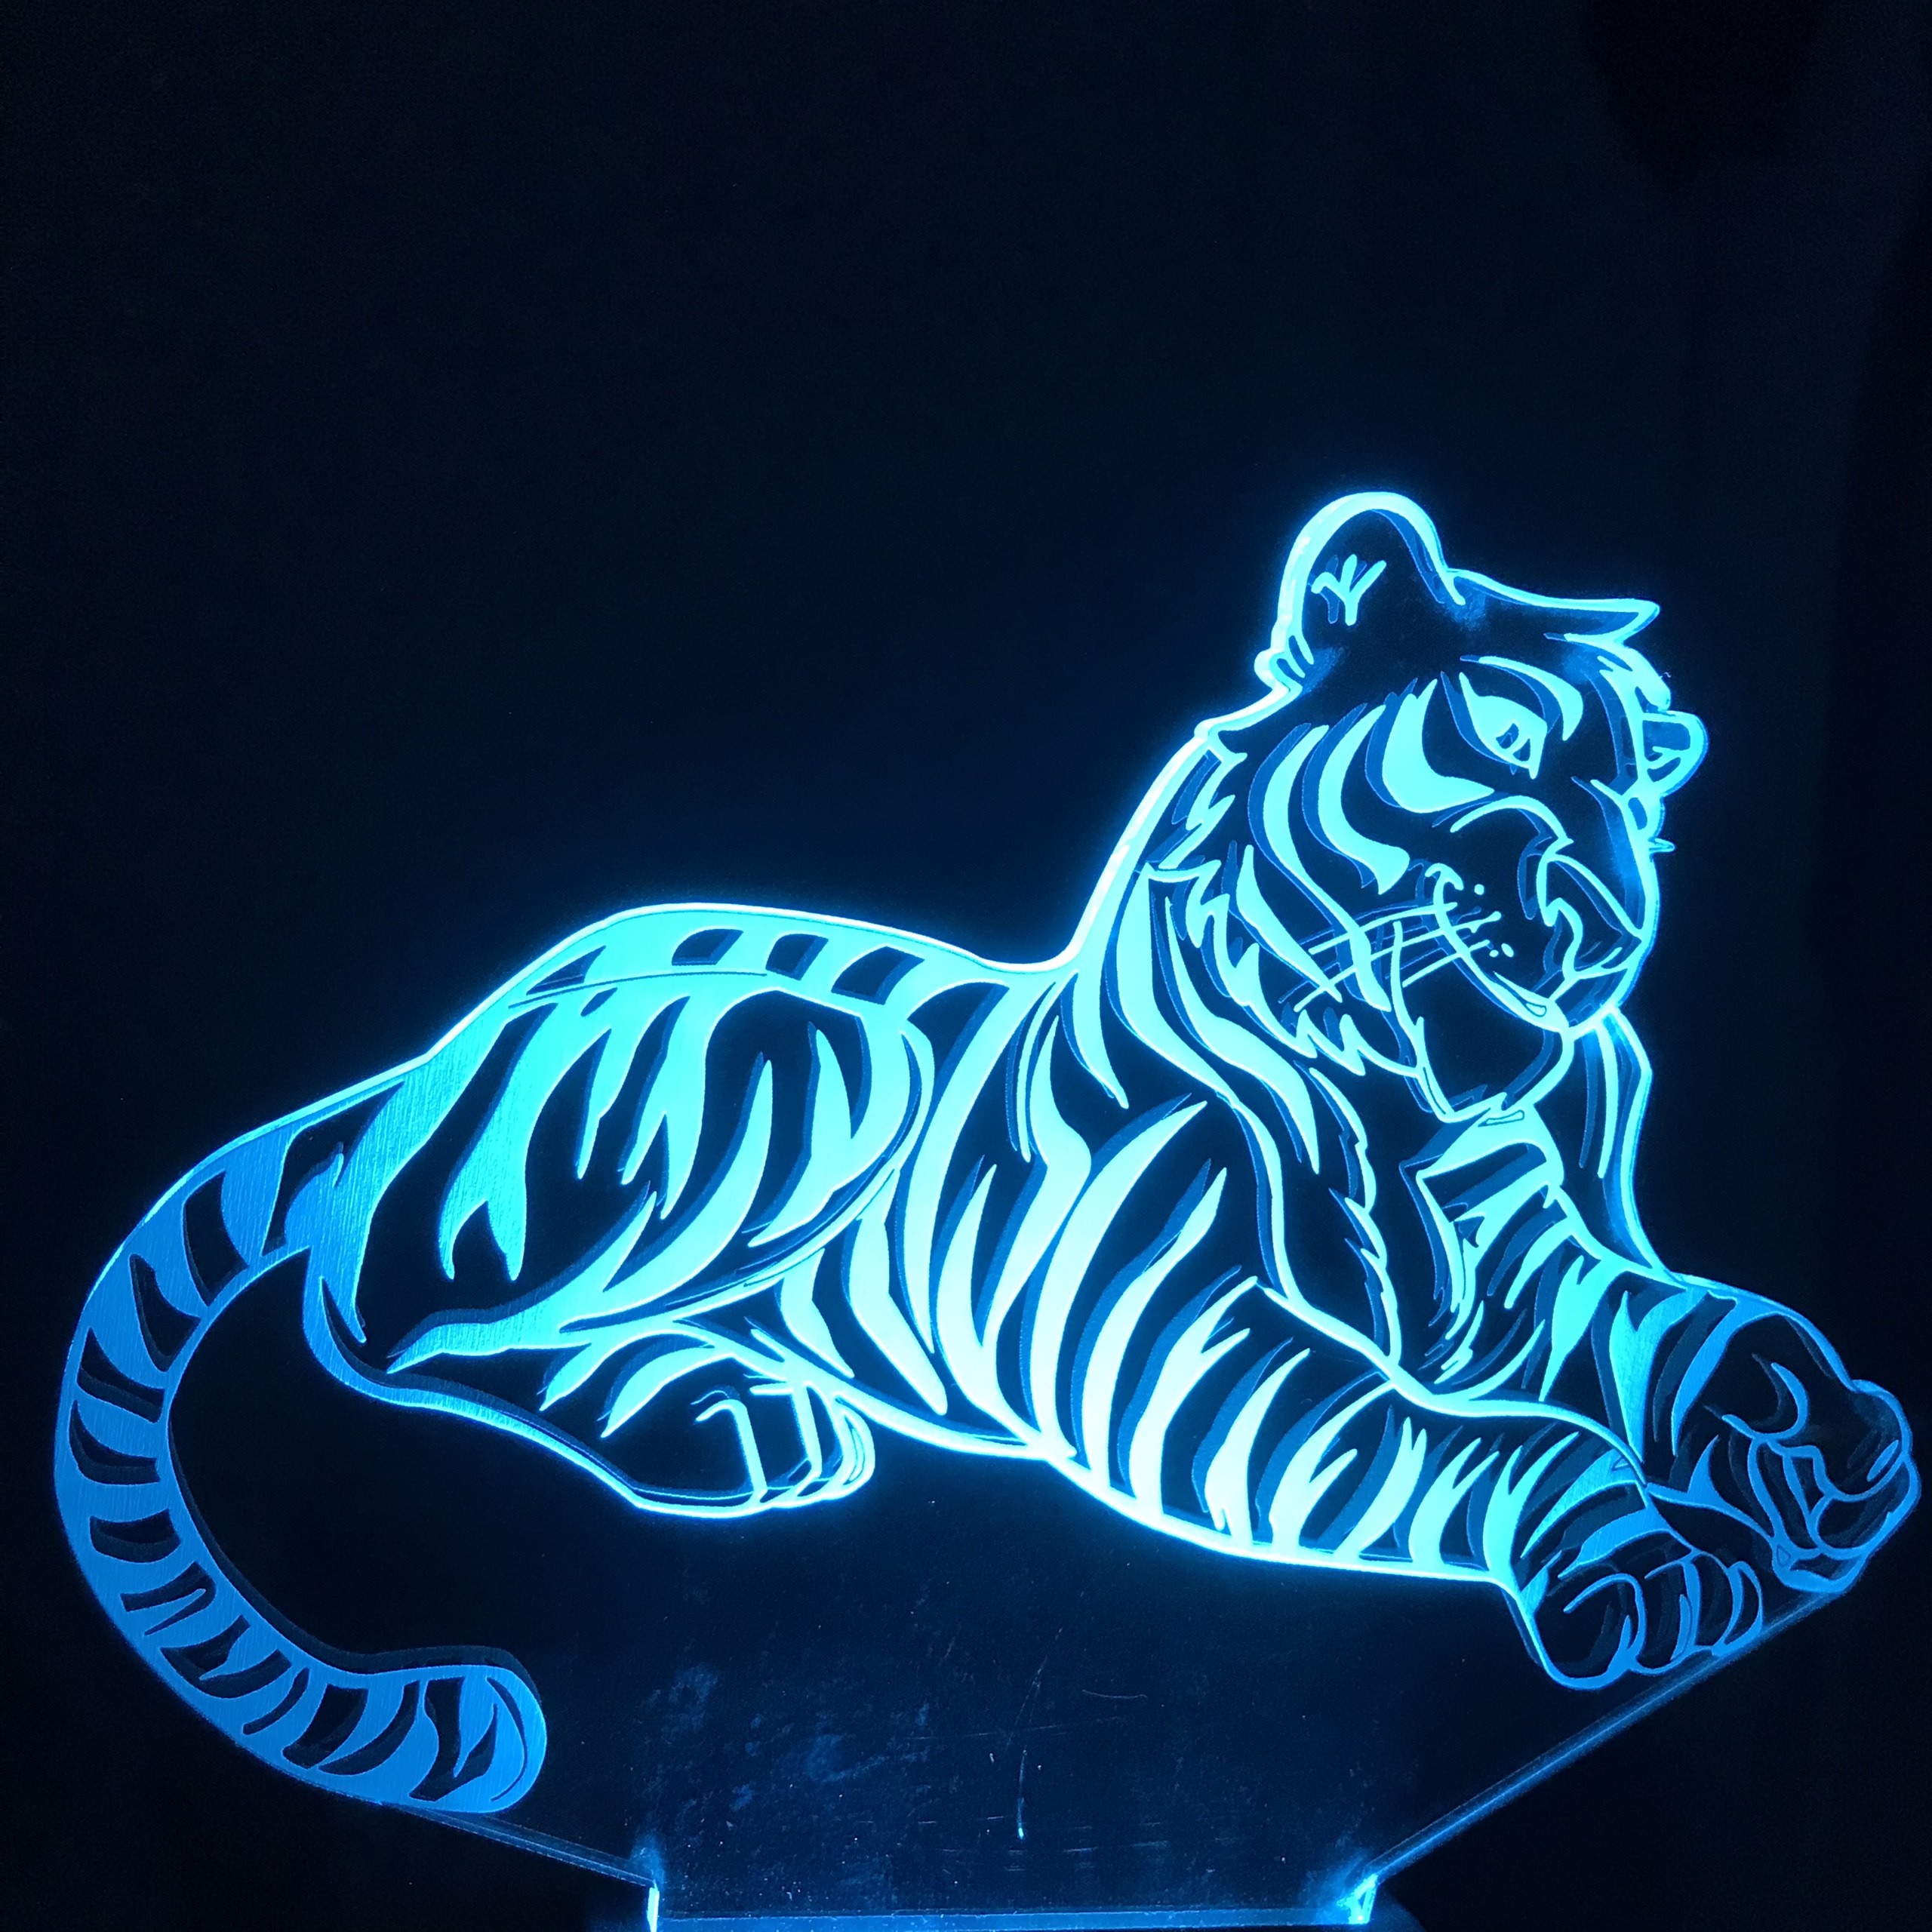 Đèn LED con hổ 3D sẽ khiến không gian sống của bạn trở nên độc đáo và ấn tượng hơn bao giờ hết. Với khả năng tạo bóng rất chân thực, chiếc đèn này sẽ cùng bạn khám phá thế giới hoang dã chỉ với một chạm tay.